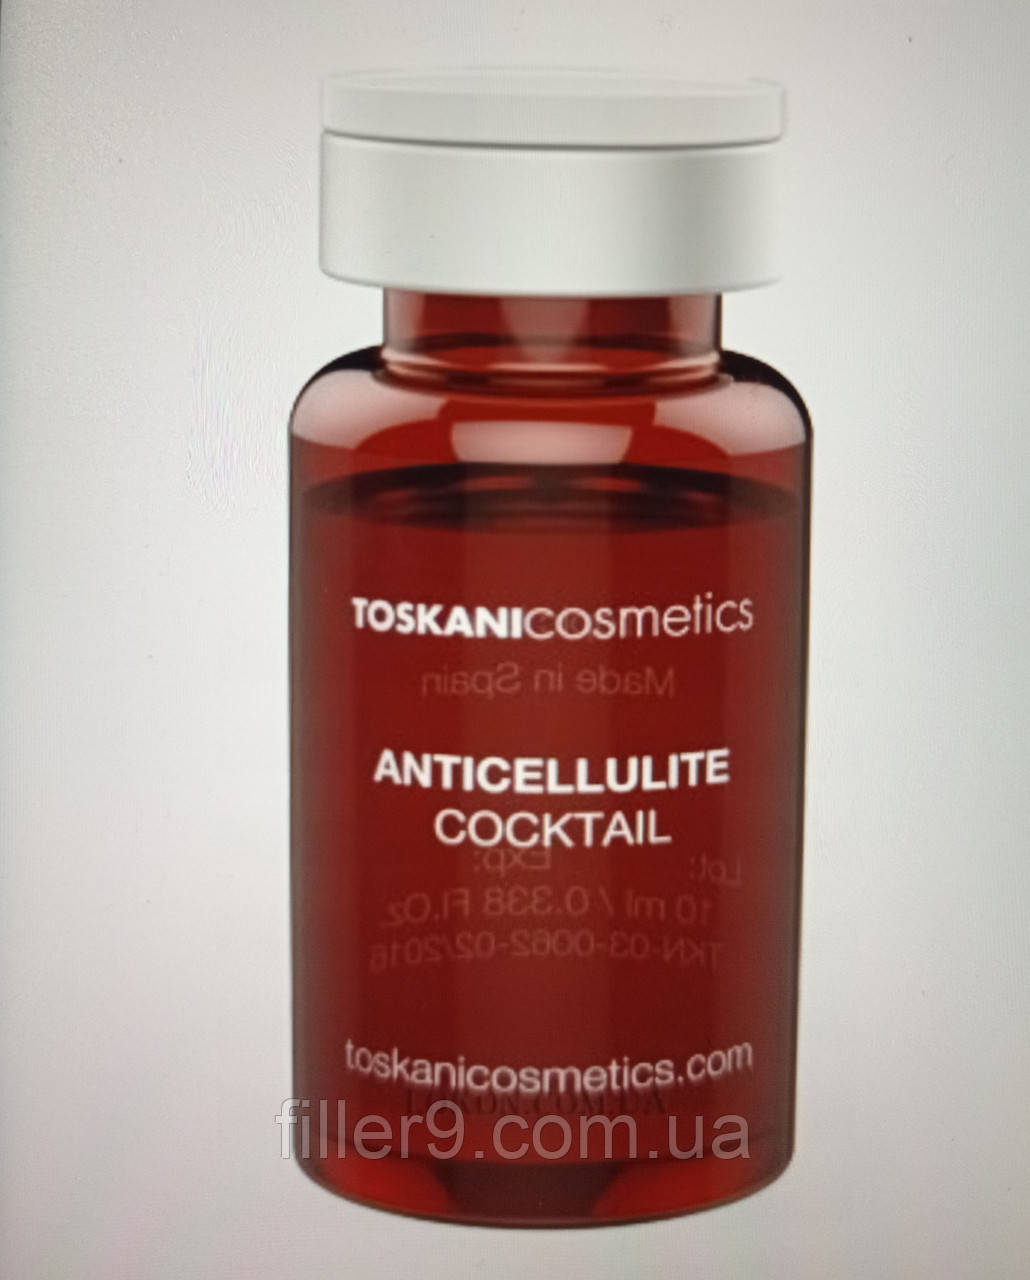 Toskani Cosmetics Anticellulite Cocktail (Тоскані Косметікс Антицелюлітний Коктейль), 1 x 10 мл